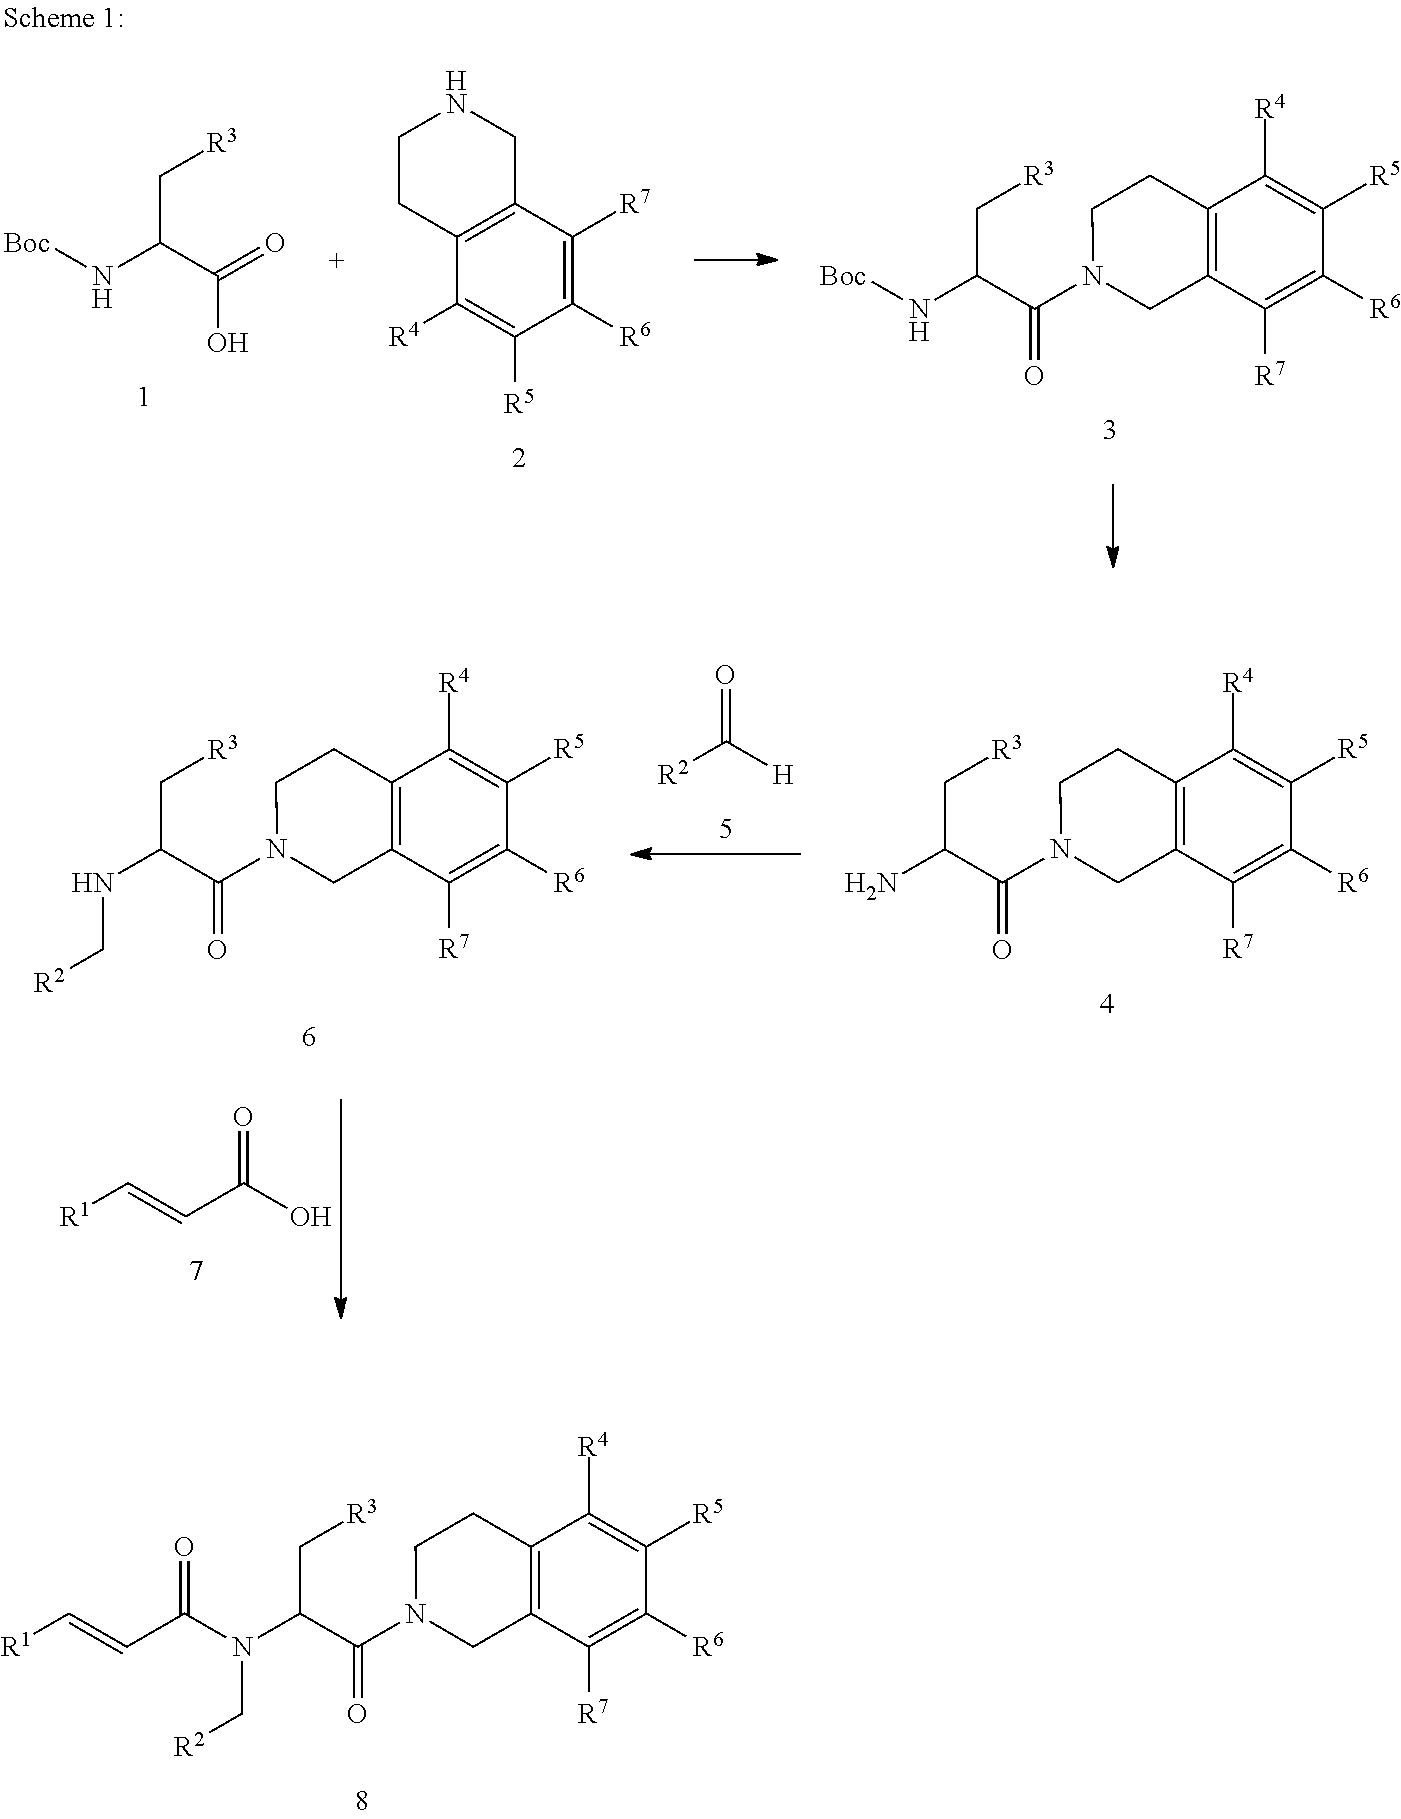 Tetrahydroisoquinolines as antimalarial agents